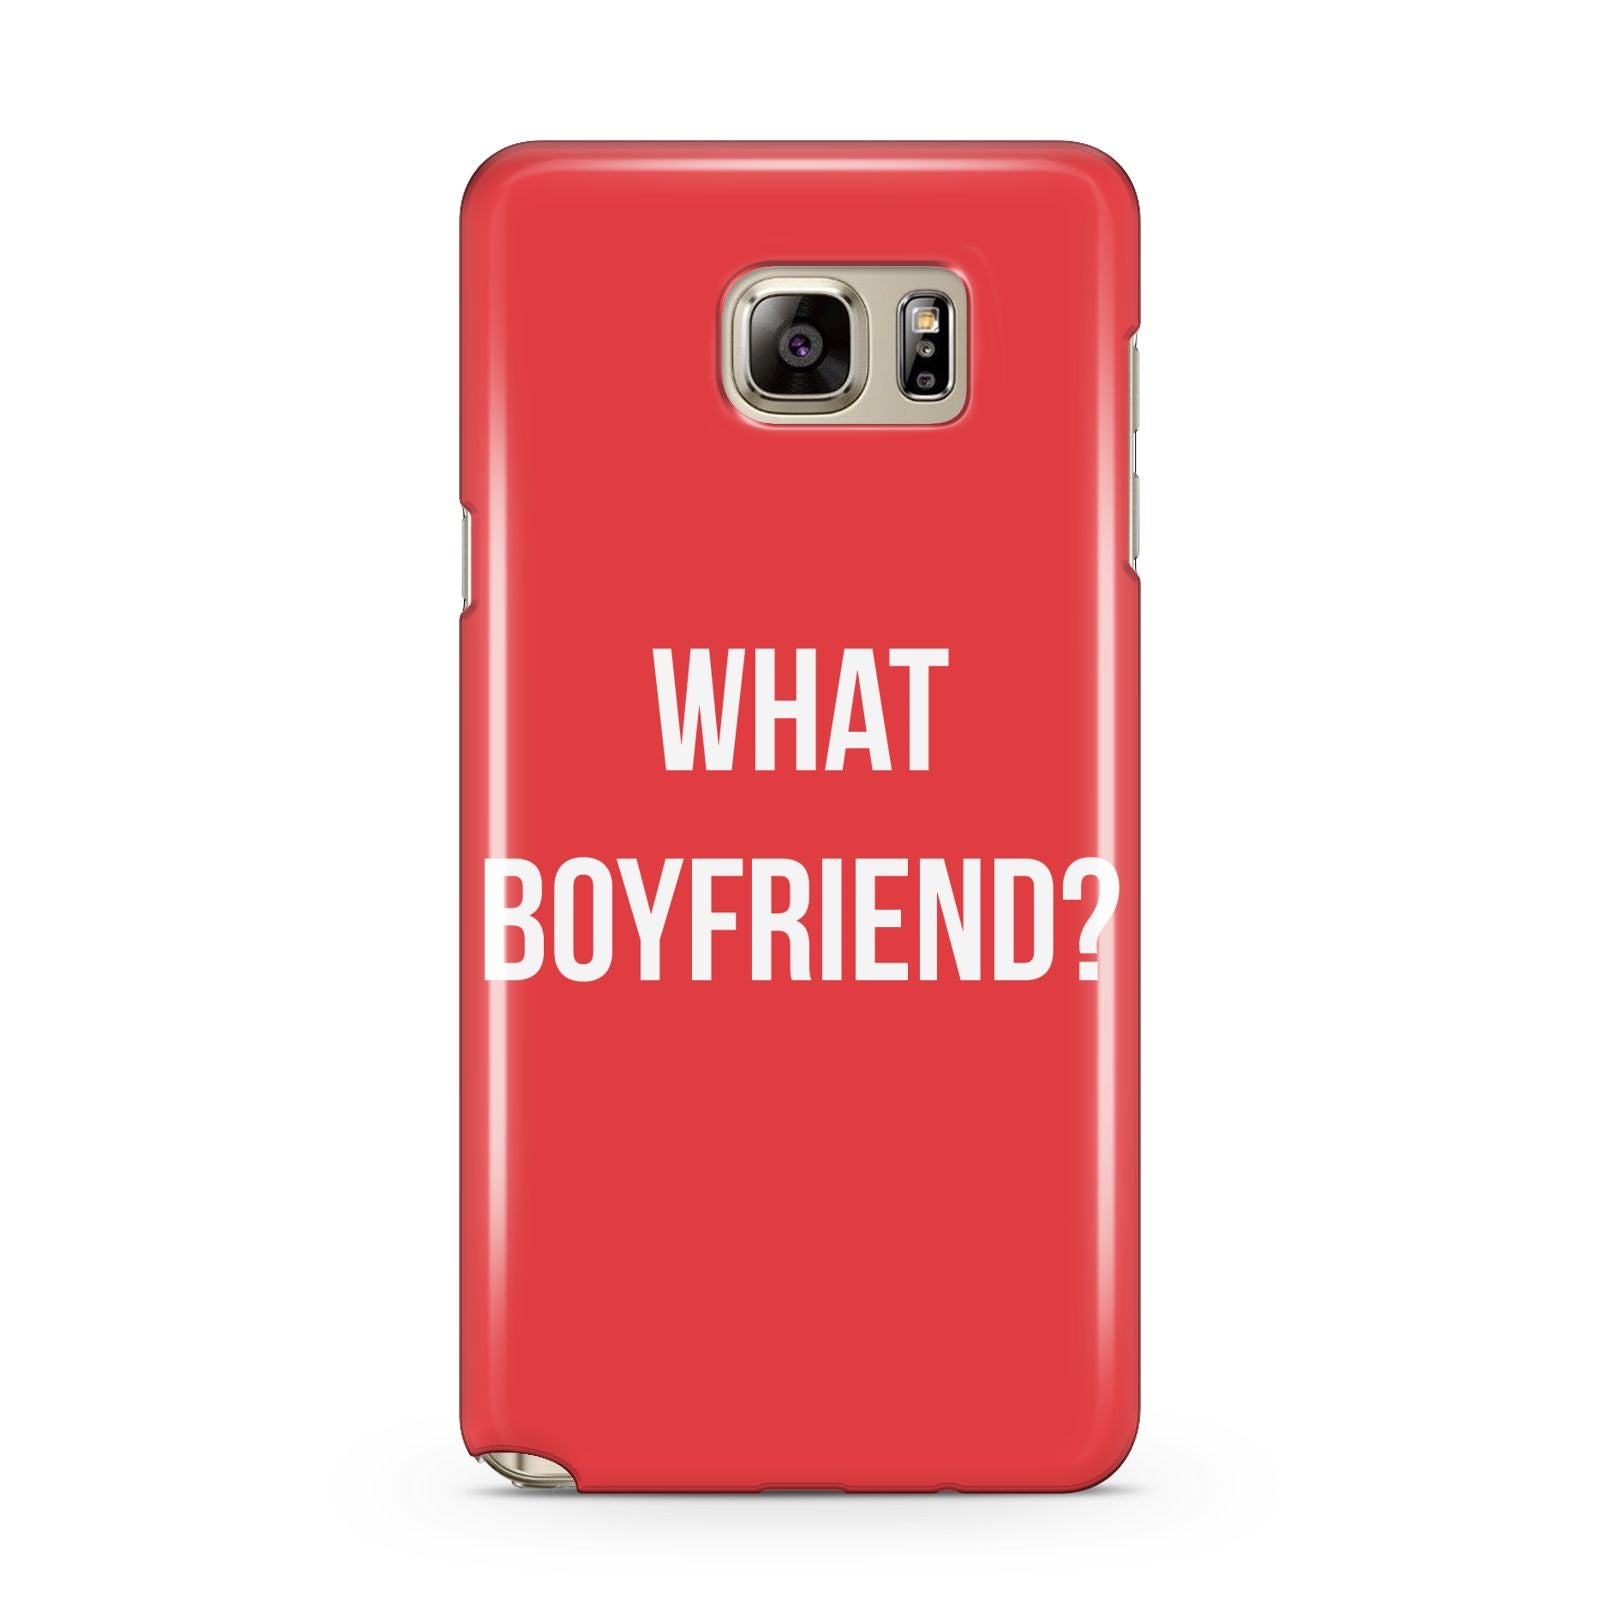 What Boyfriend Samsung Galaxy Note 5 Case